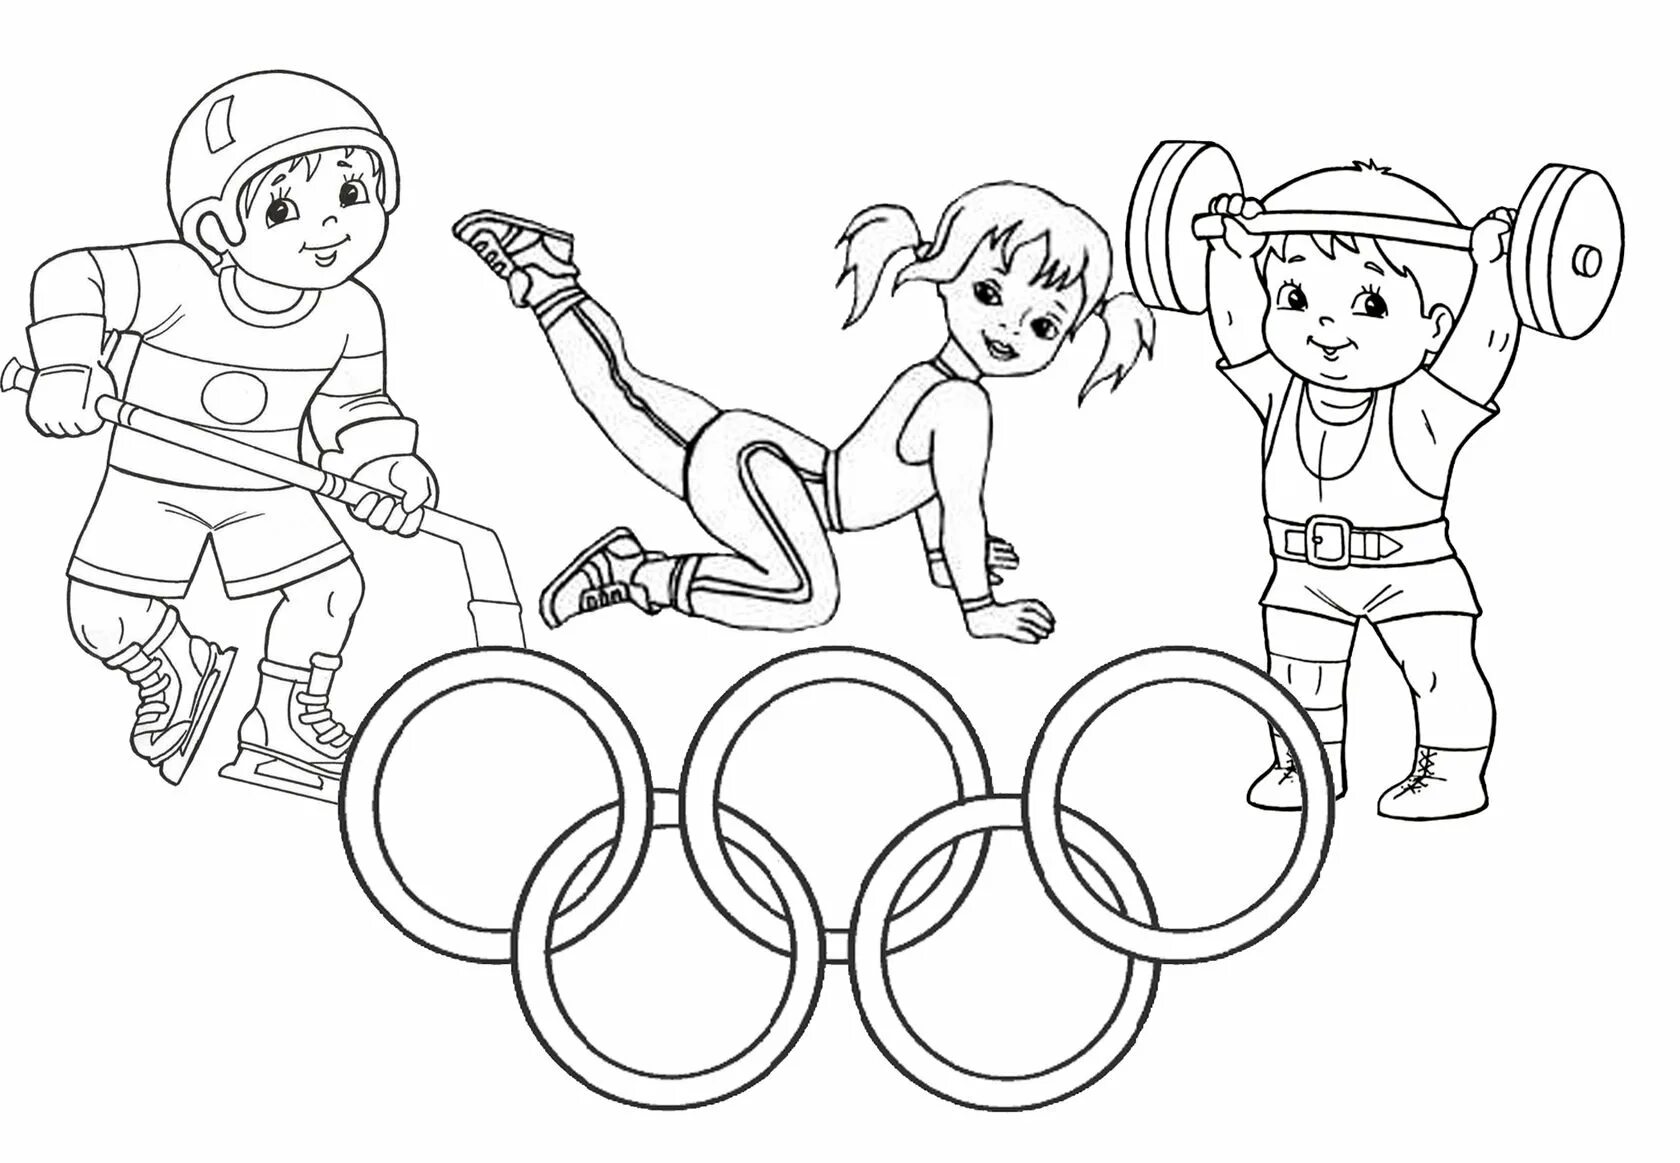 Юмористическая раскраска для детских олимпийских видов спорта